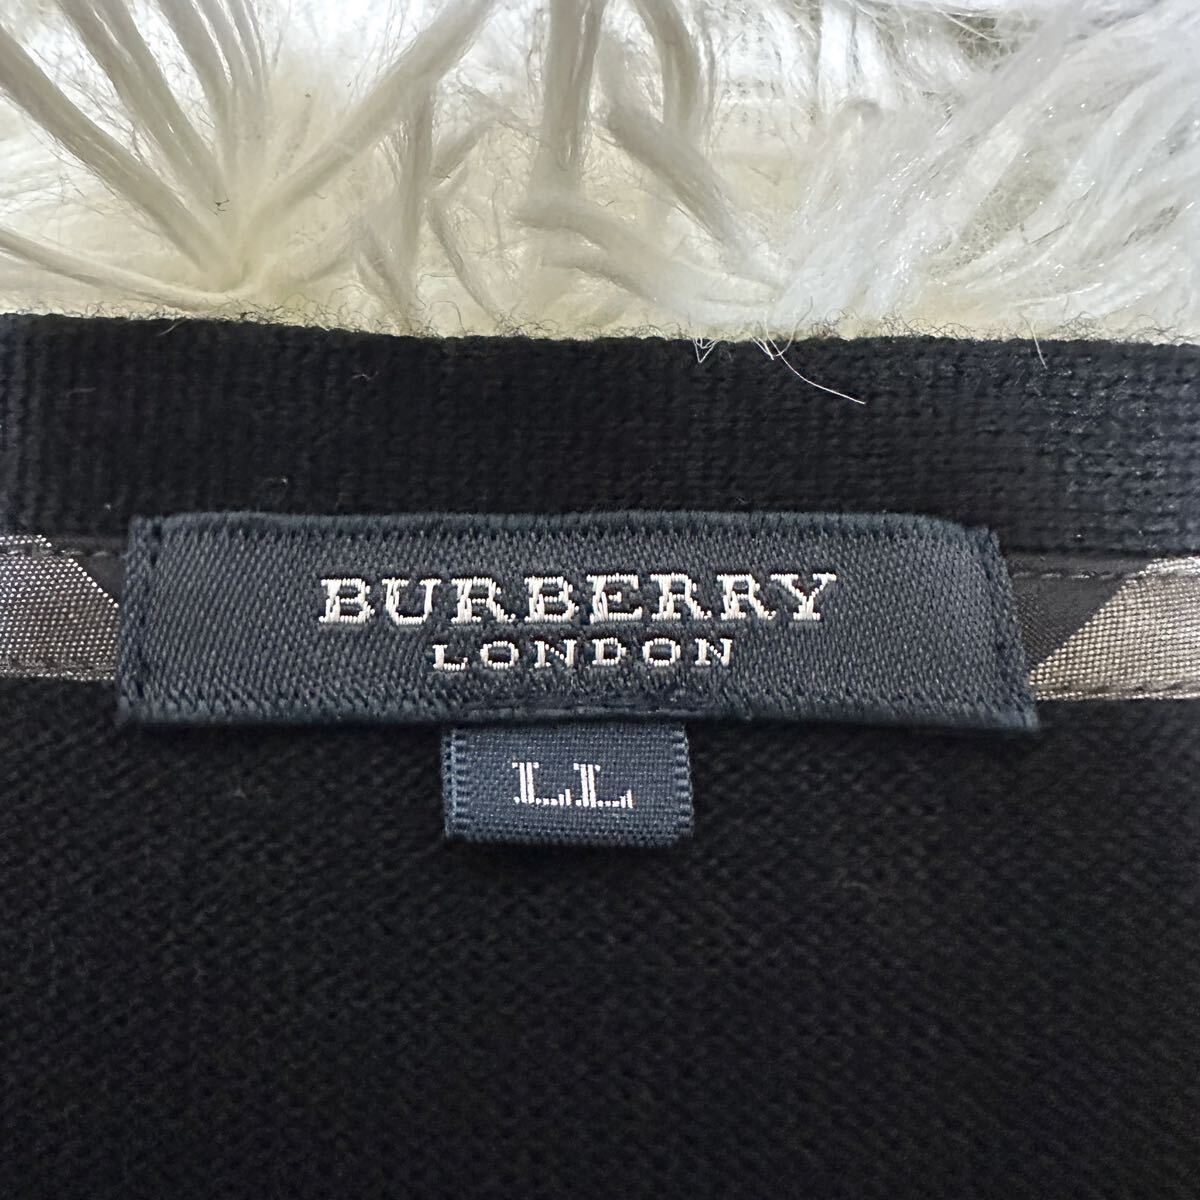 BURBERRY LONDON Burberry London свитер кардиган вязаный весна лето тонкий черный чёрный шланг Logo LL размер 